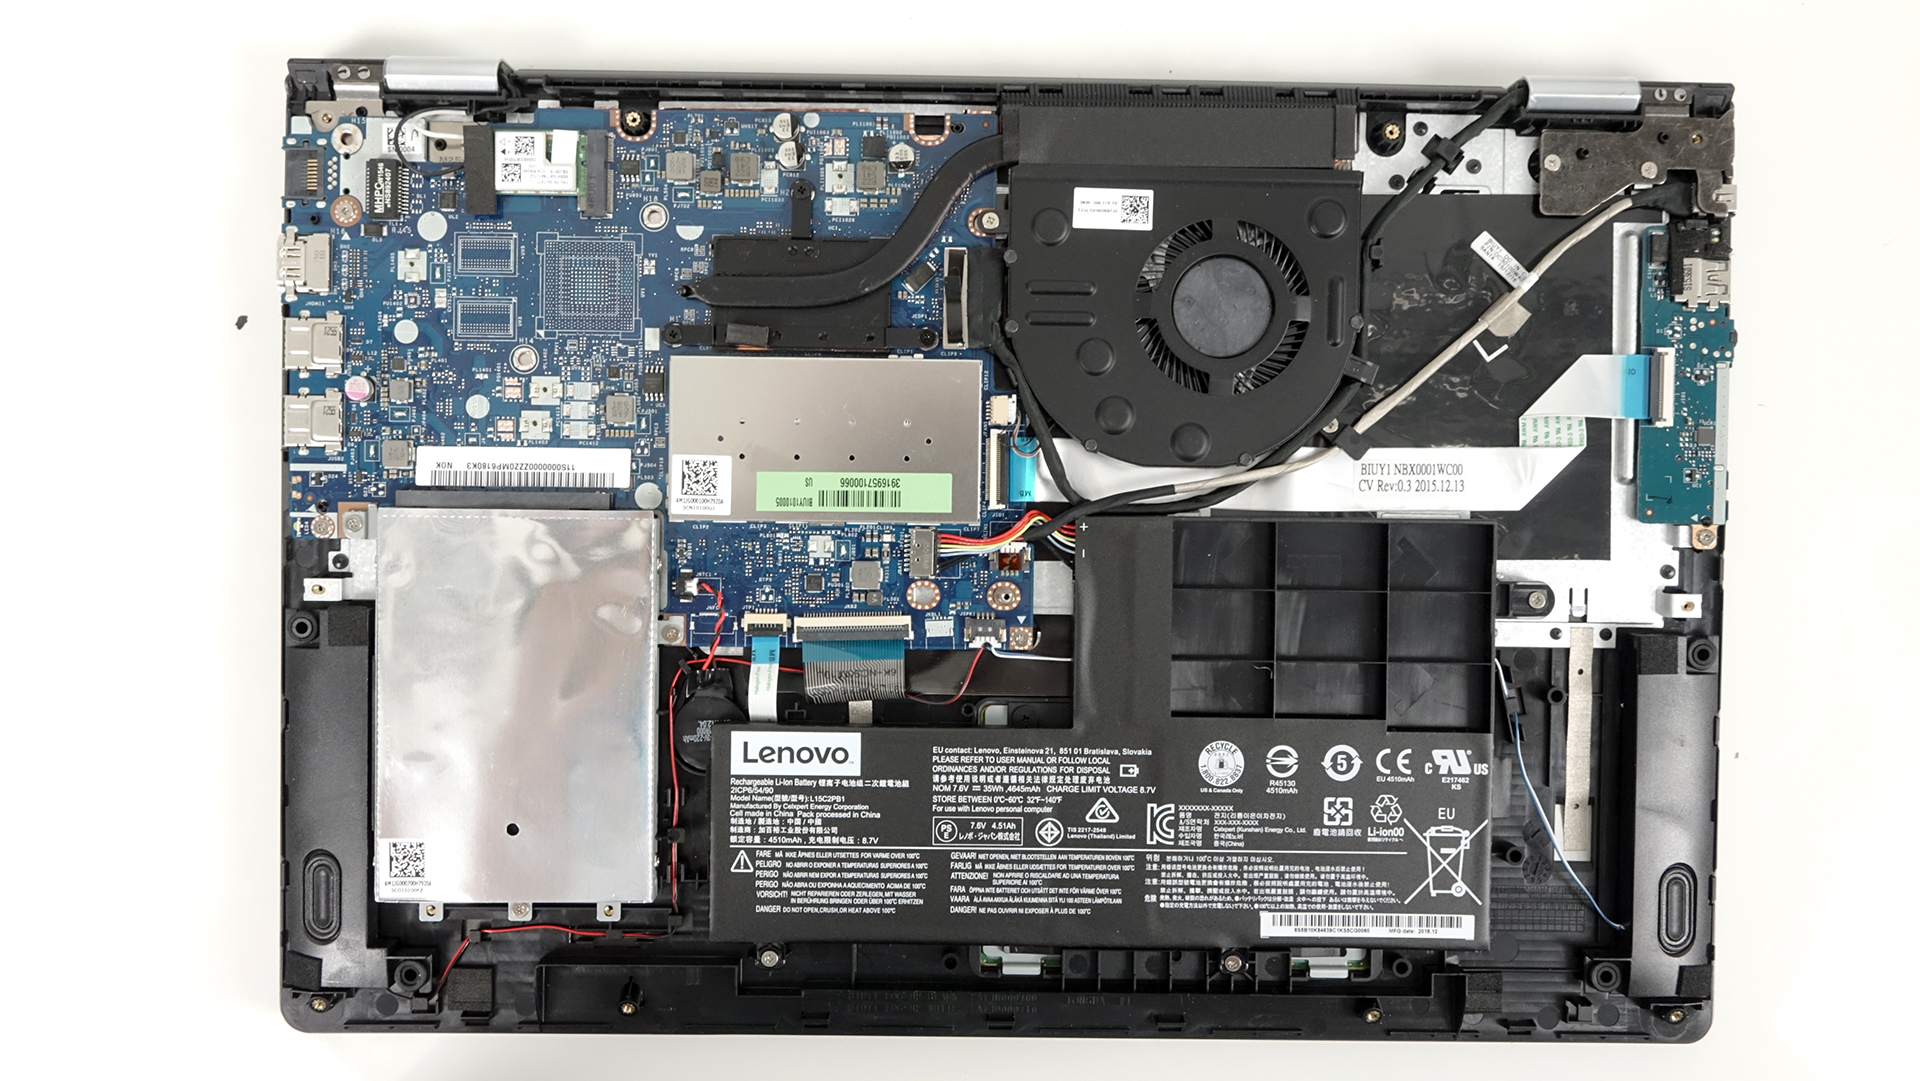 hjemmelevering barm pålidelighed Inside Lenovo Yoga 510 - disassembly, internal photos and upgrade options |  LaptopMedia.com